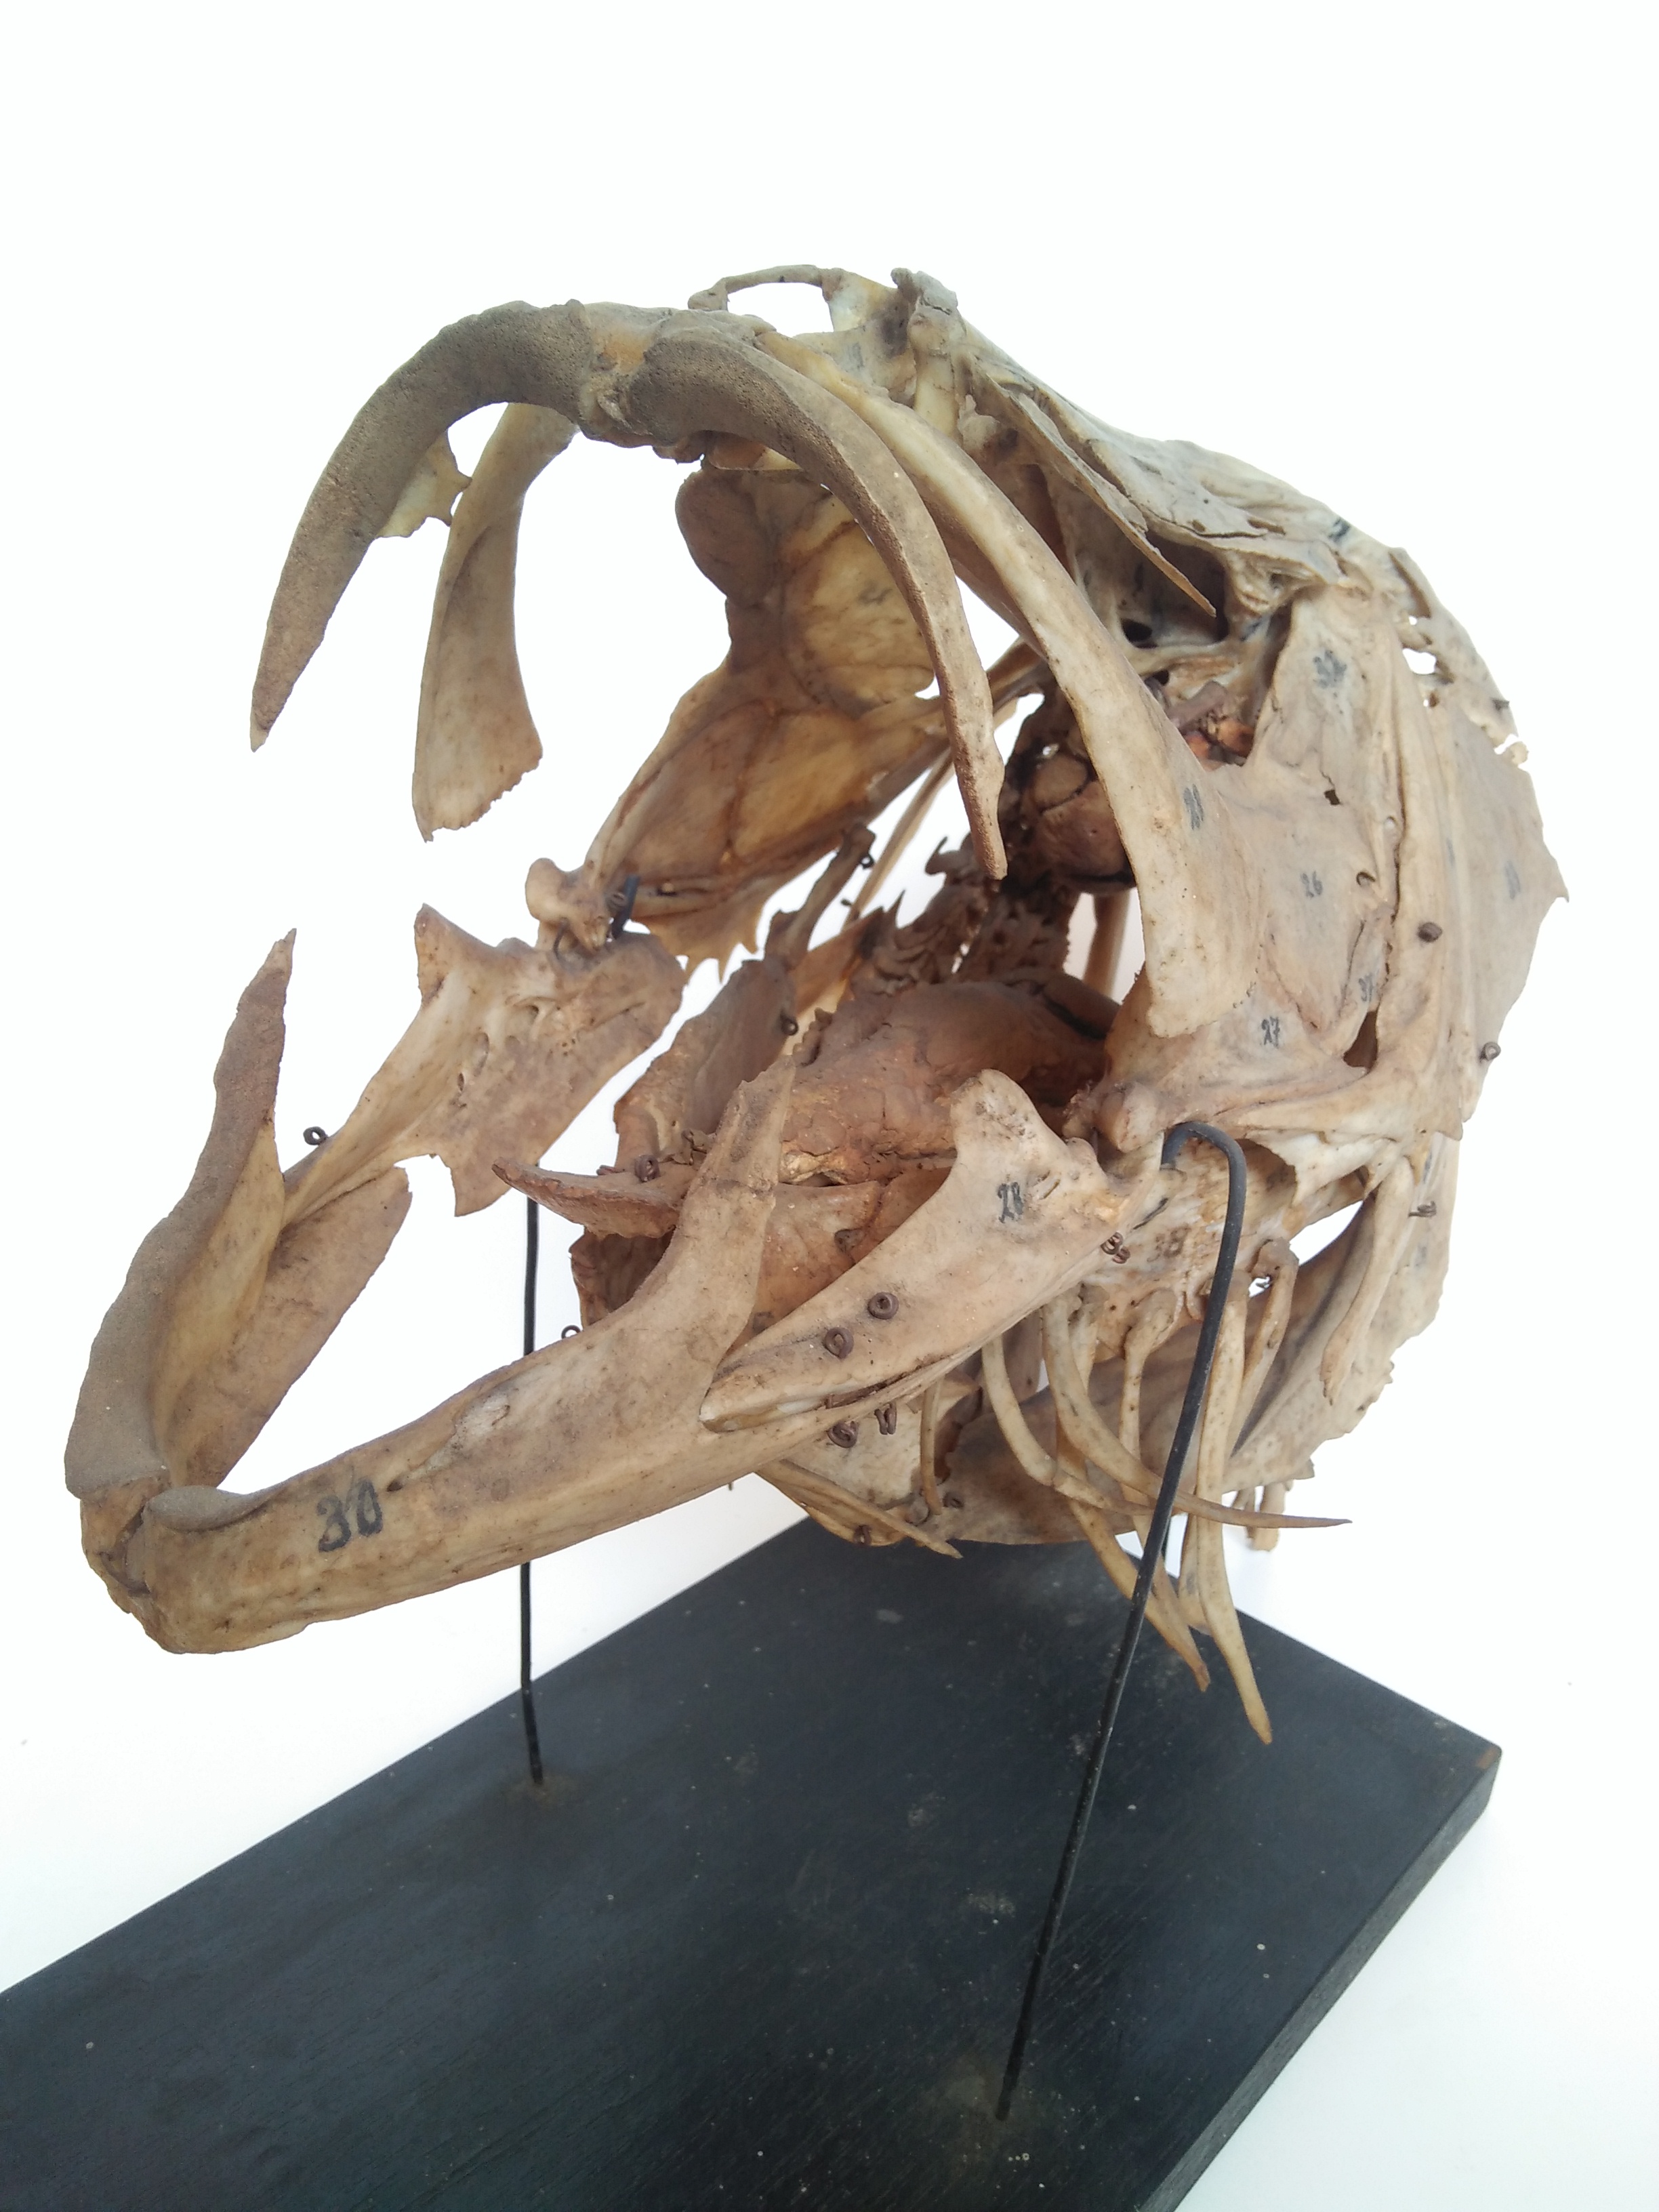 Contoh awetan kering dalam bentuk artikulasi rangka kepala ikan kakap. Foto: Ganjar Cahyadi